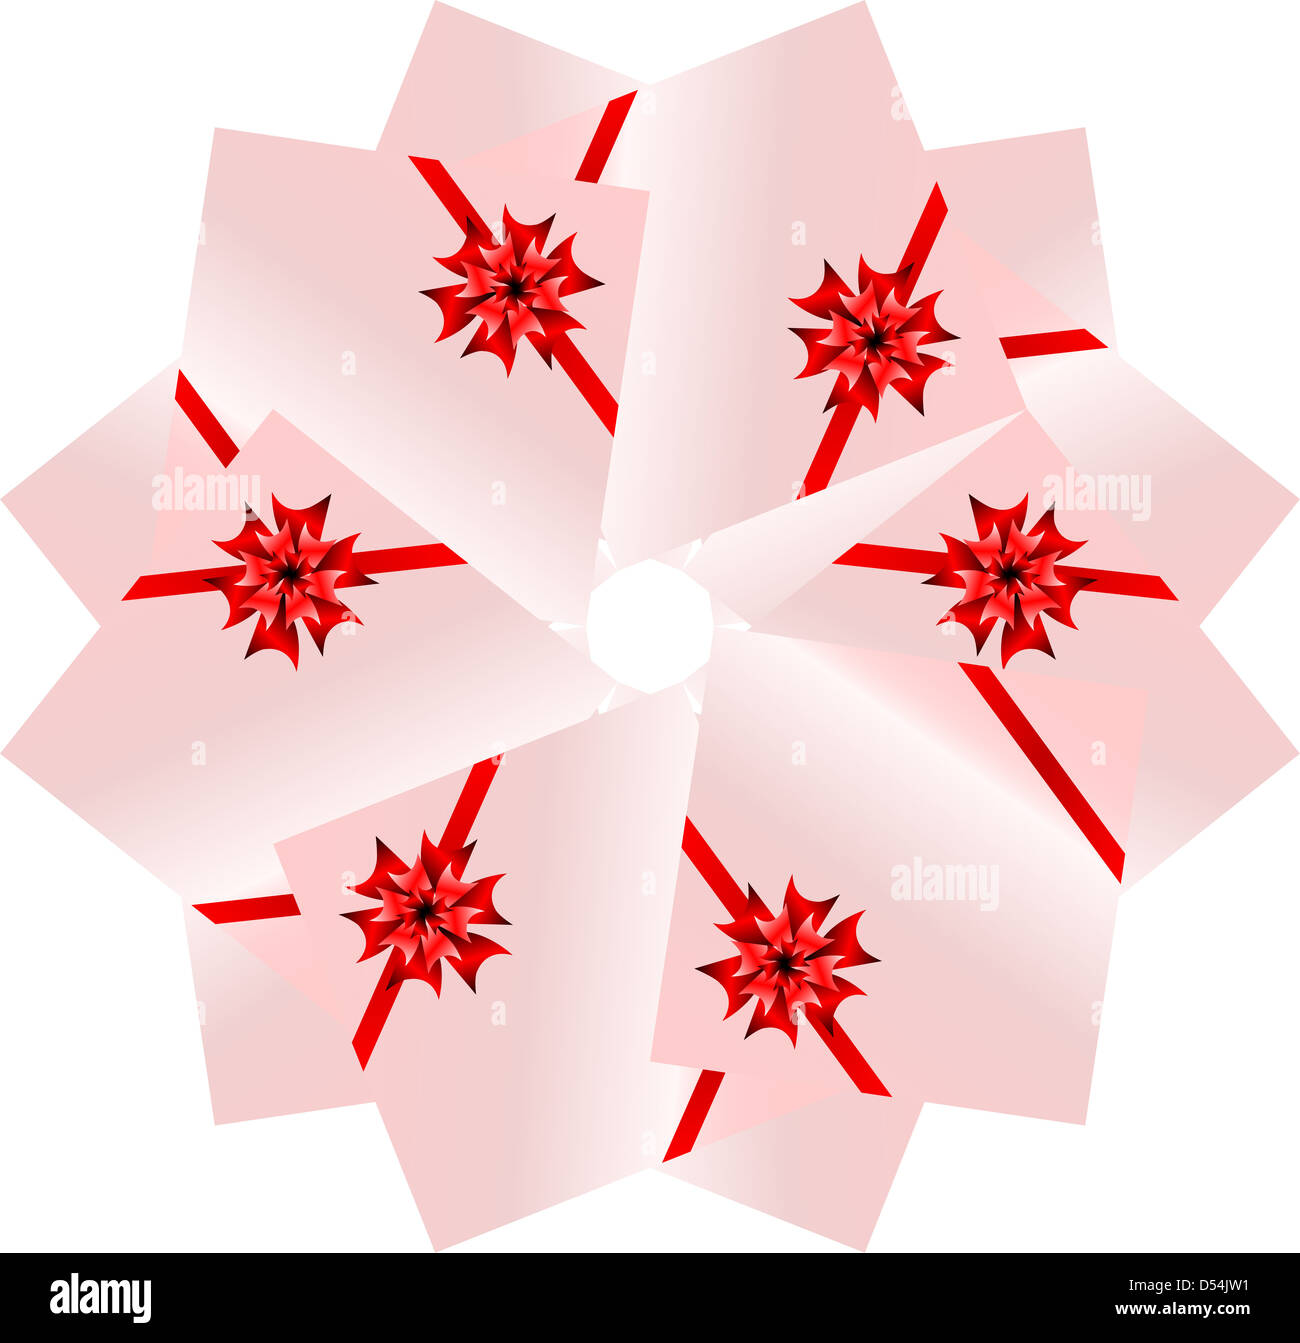 Une collection de rubans rouges sur les coffrets cadeaux. seamless pattern Banque D'Images